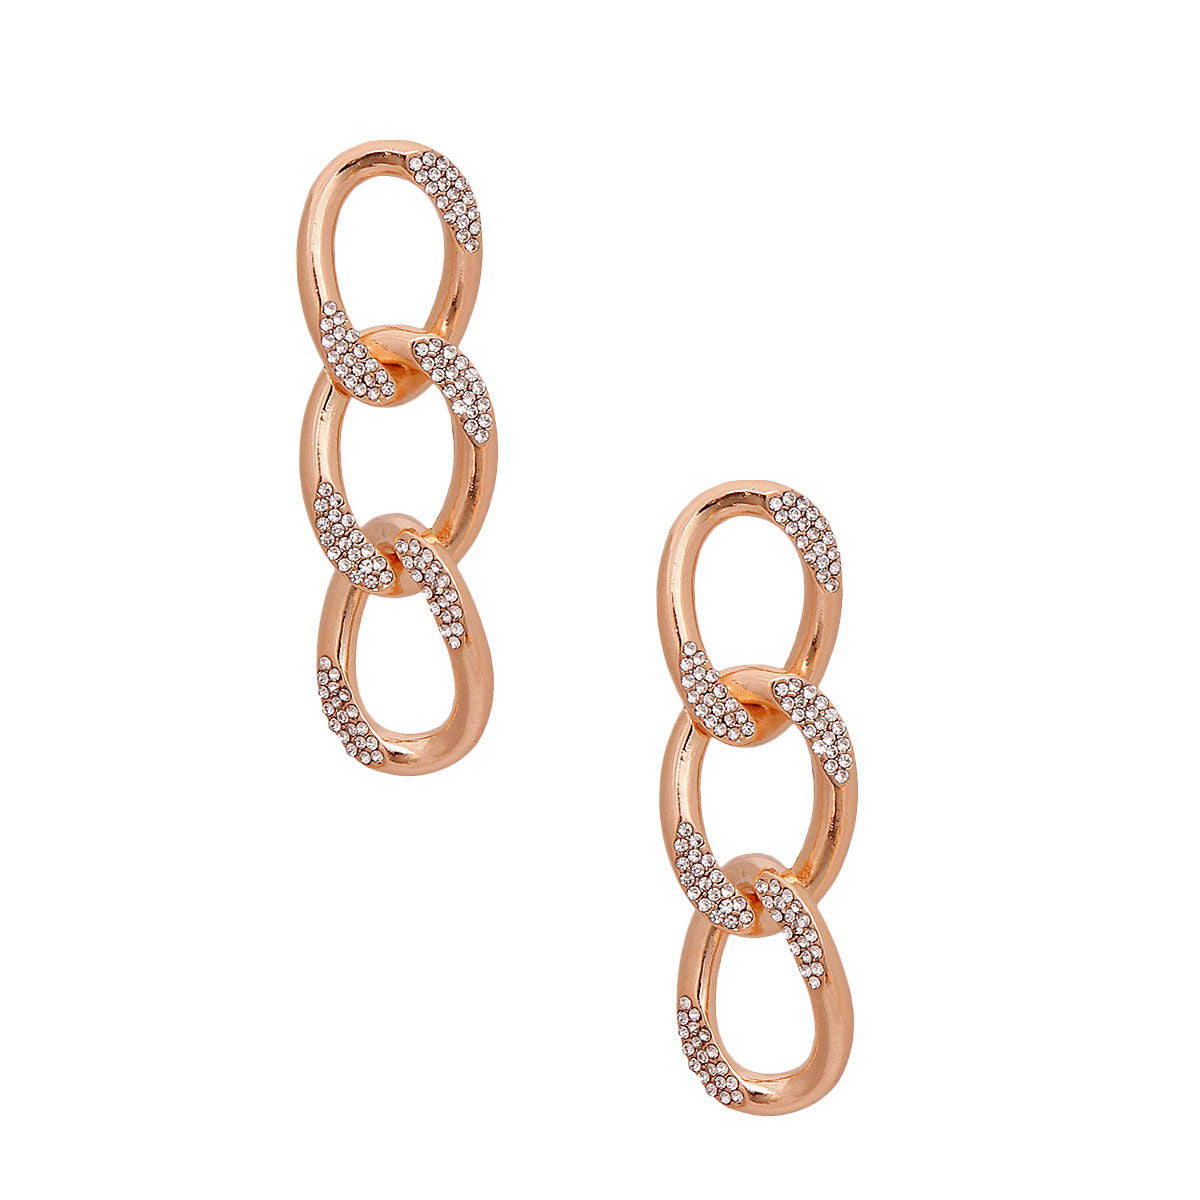 Gold Crusted Rhinestone Link Earrings